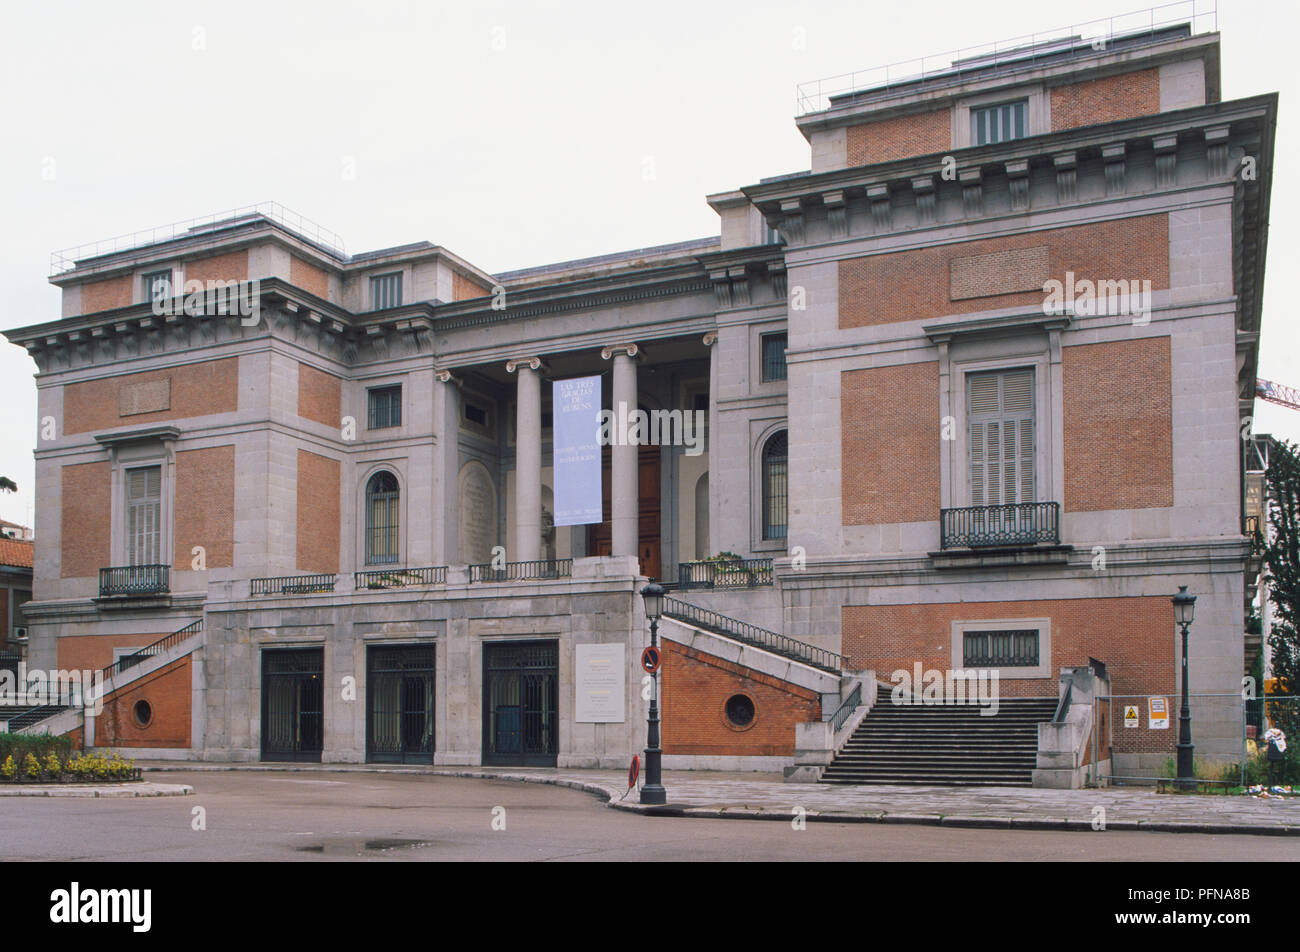 Spanien, Madrid, 1785 von Juan de Villanueva, das Museo del Prado das neoklassizistische Richtung würde zeigt und weg von den Exzessen der barocken Architektur entworfen. Stockfoto